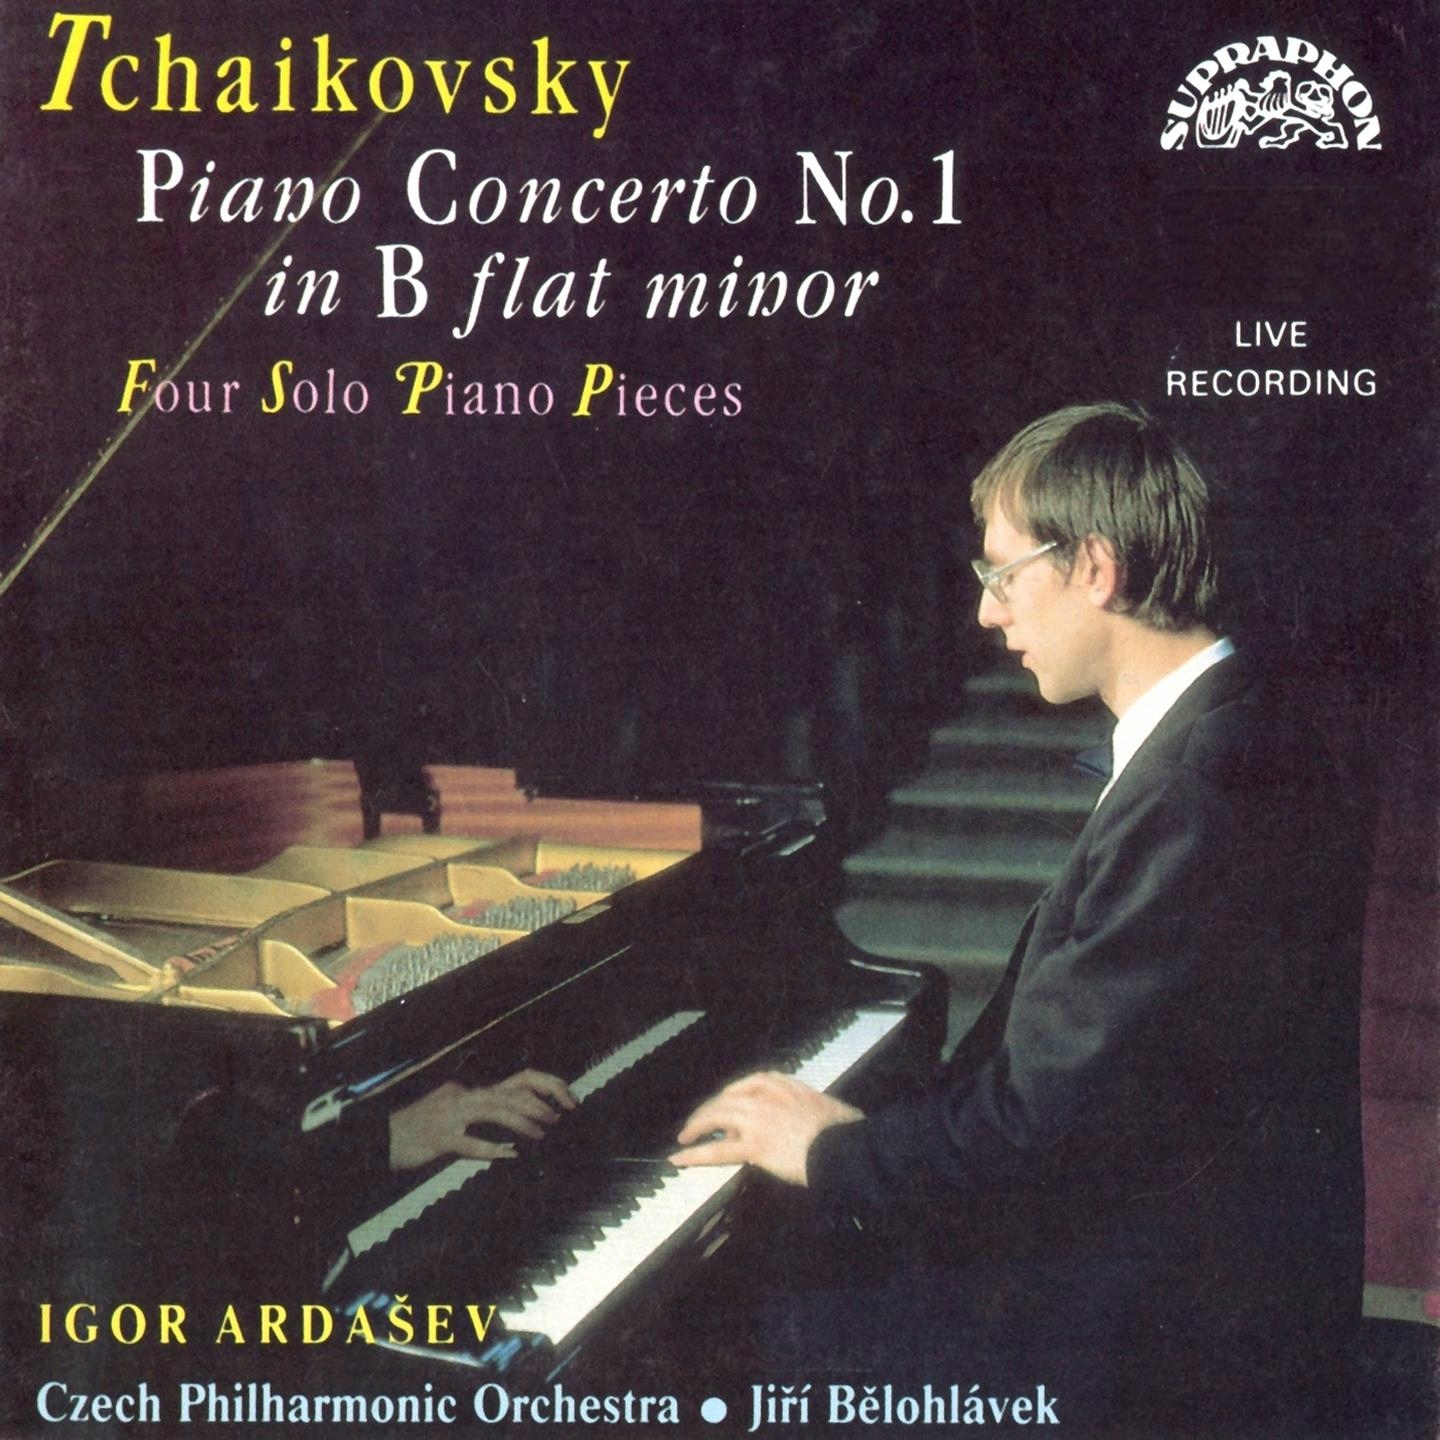 3 Pieces, Op. 9, TH 131: No. 2 in B-Flat Major, Polka de salon. Andante moderato